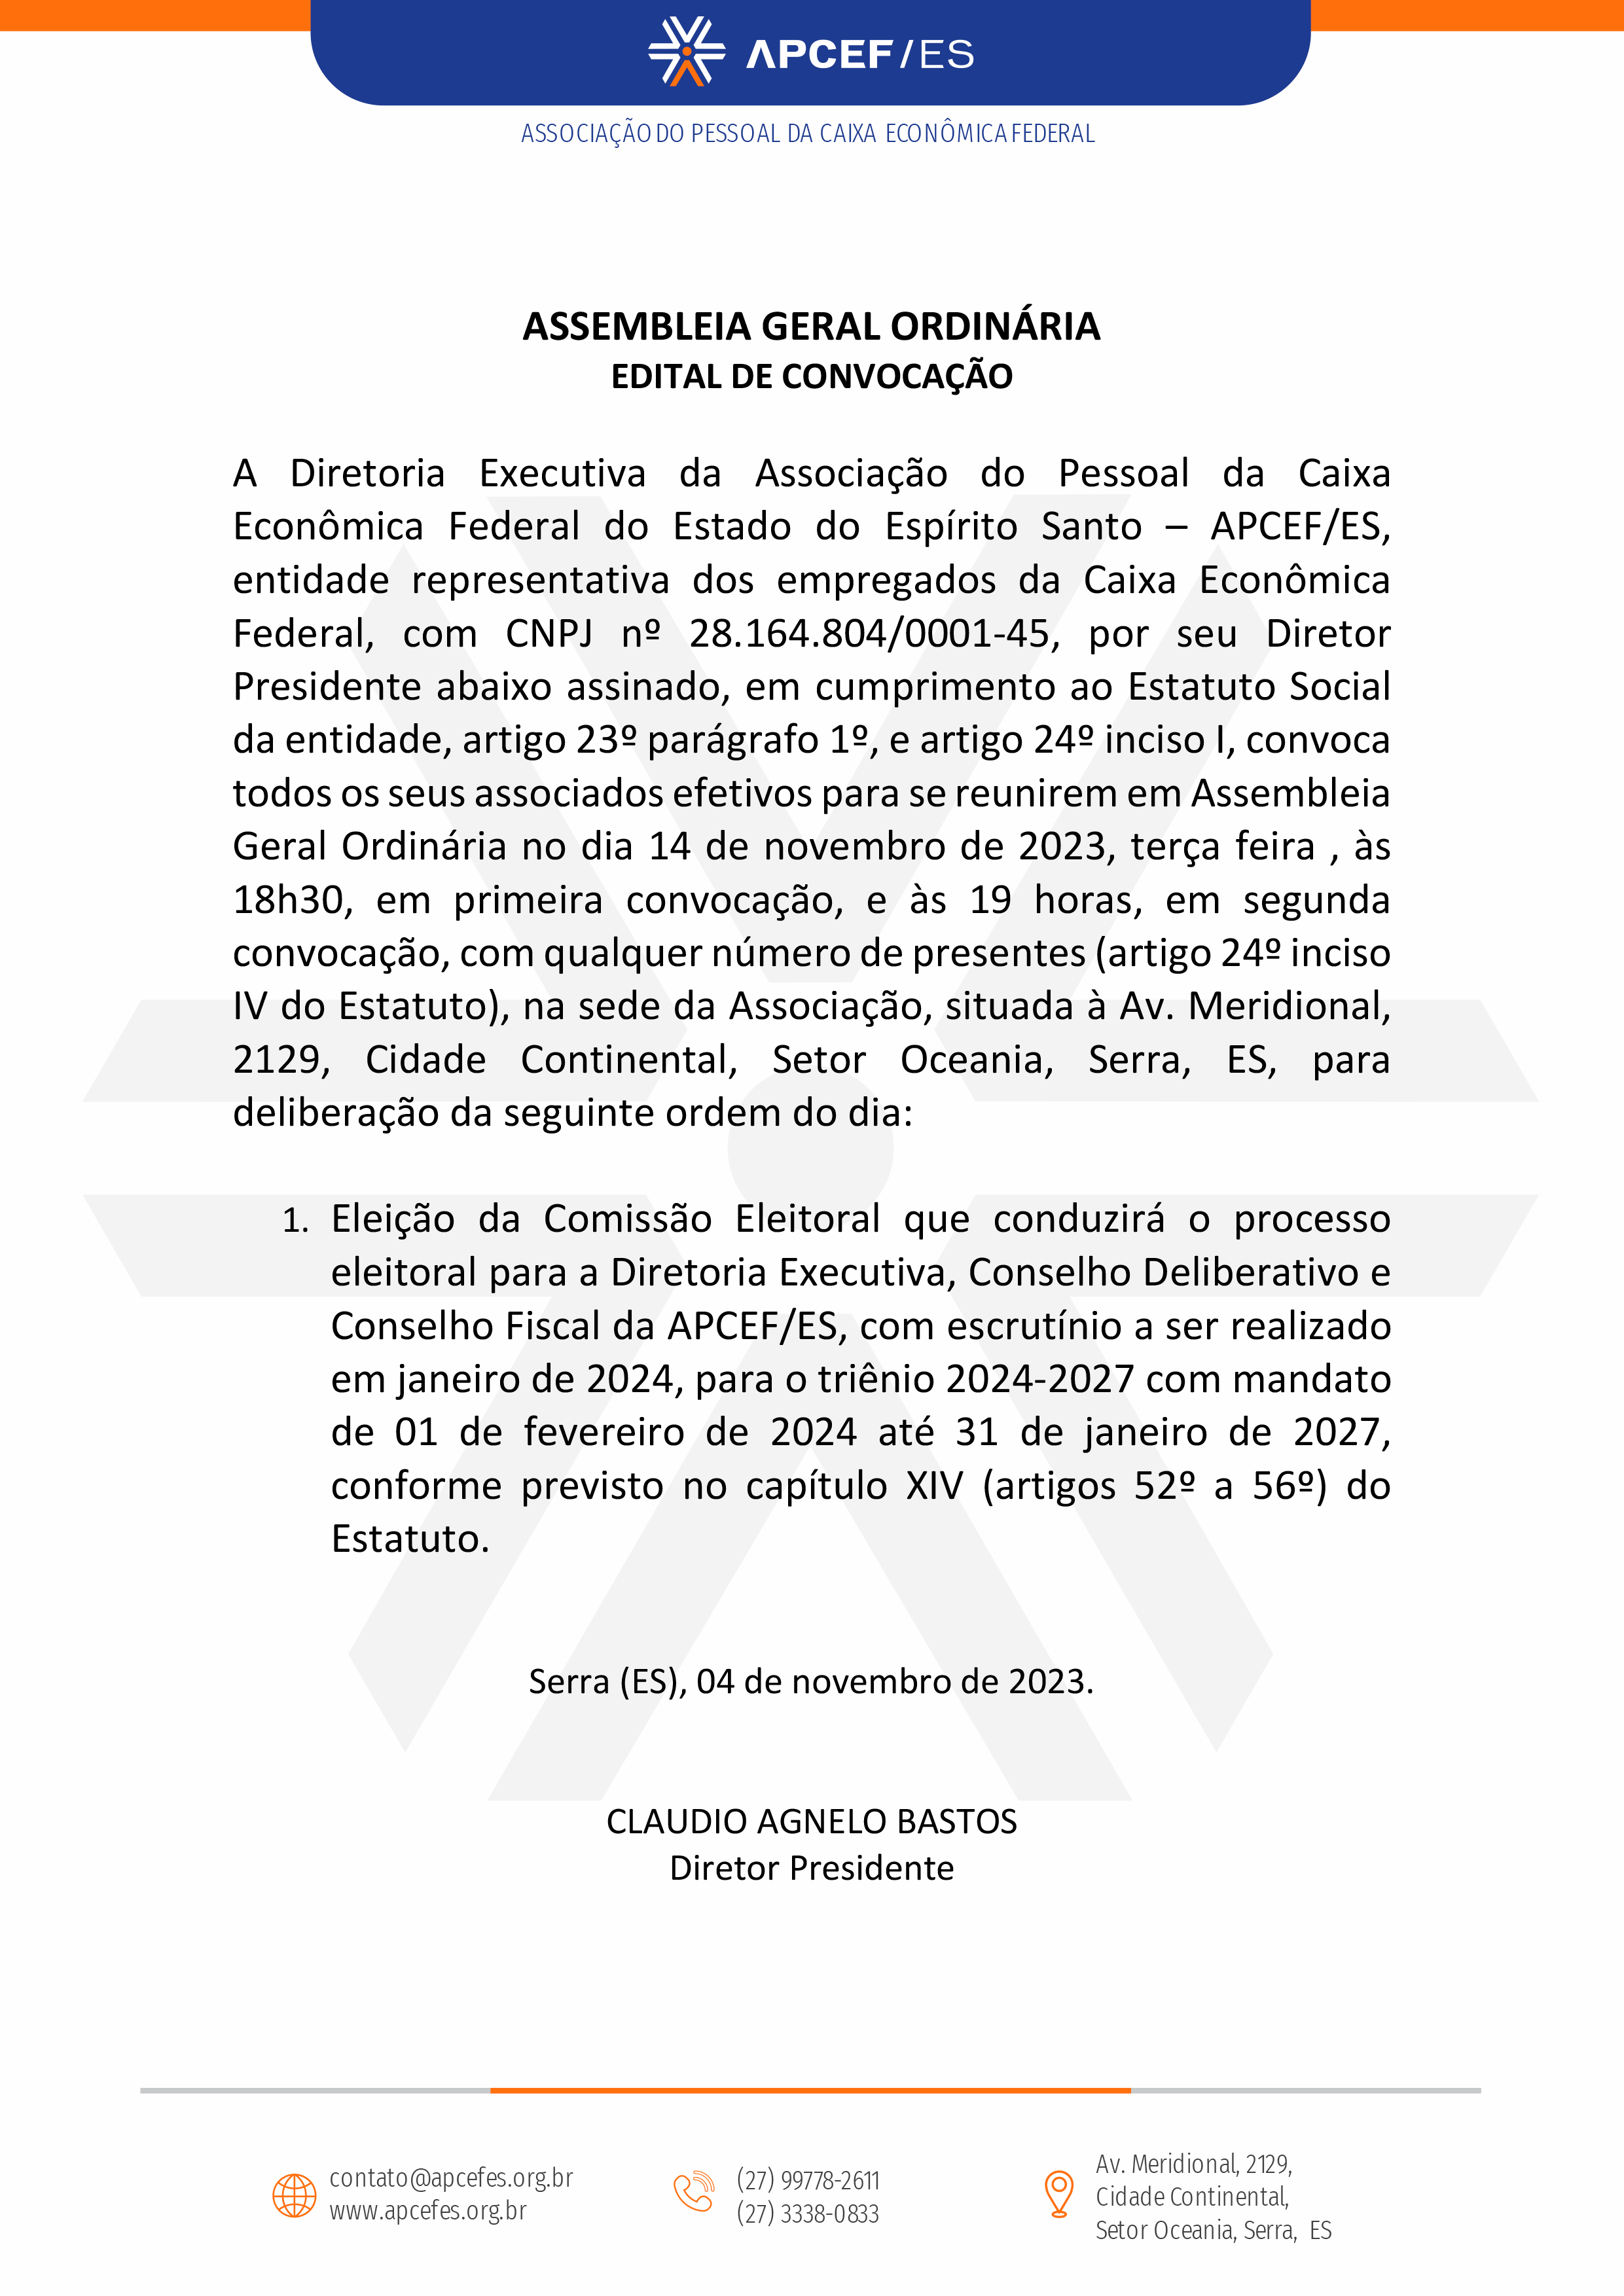 Papel Timbrado APCEFES - Convocacao Assembleia 04-11-23.png